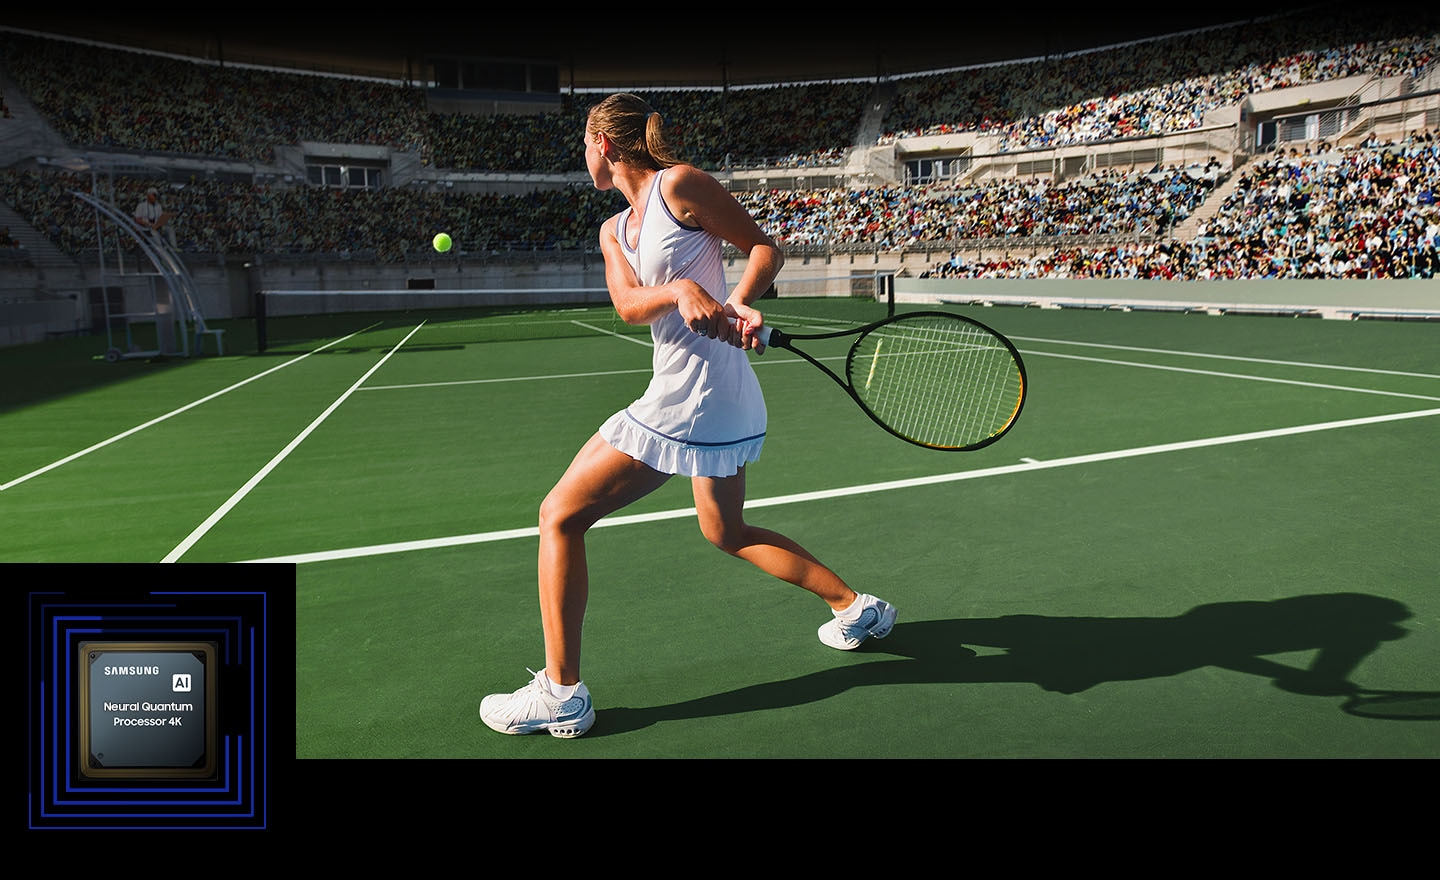 Ženska igra tenis pred veliko množico. Nevronski kvantni procesor 4K obdela številne prikazane predmete in izboljša celotno sceno. Neural Quantum Processor 4K je prikazan v spodnjem levem kotu.